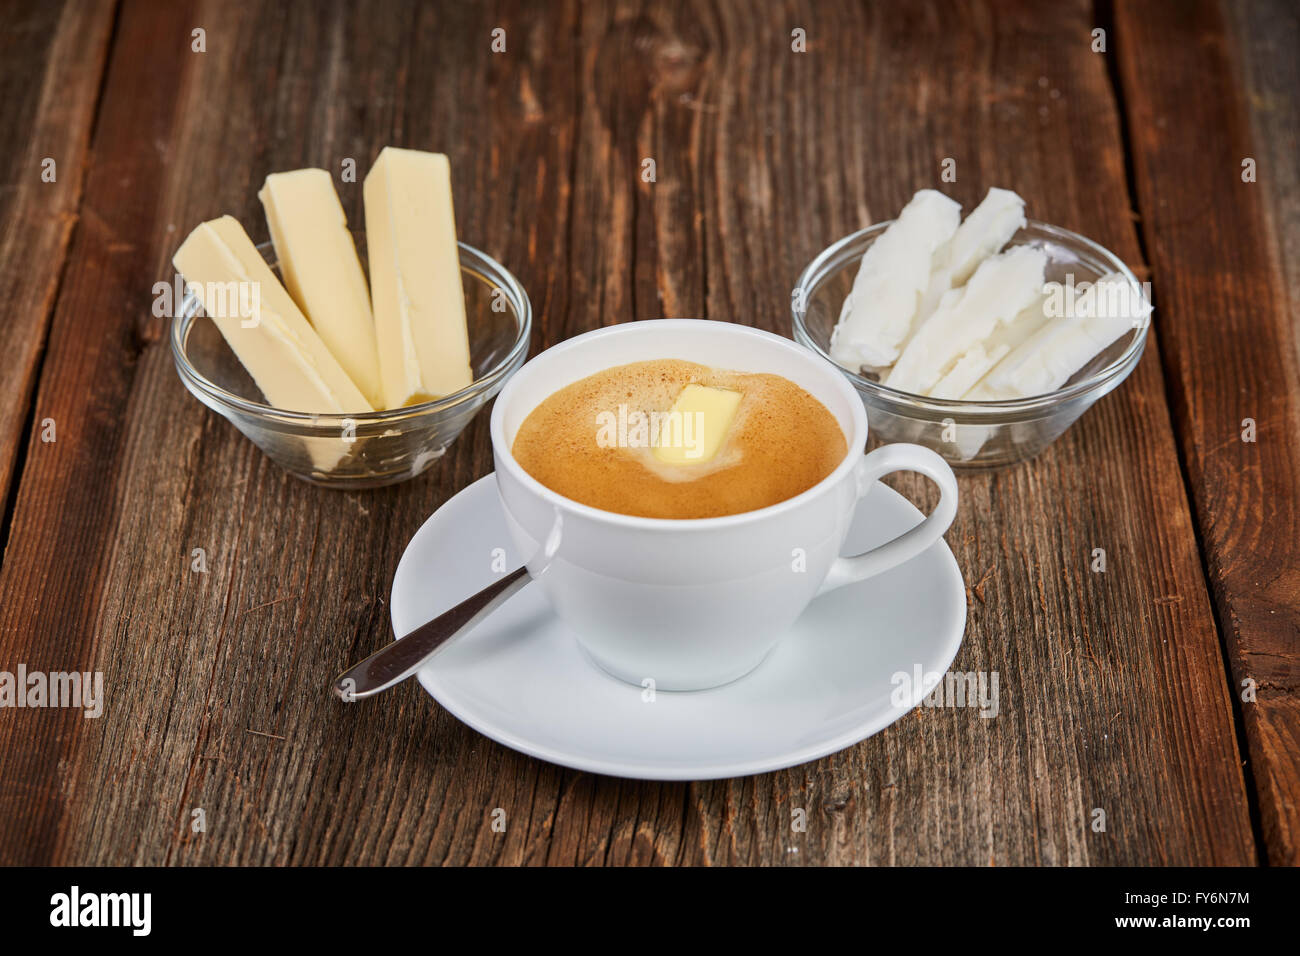 Le café, le beurre et l'huile de noix de coco pour bulletproof café sur une table en bois brun Banque D'Images